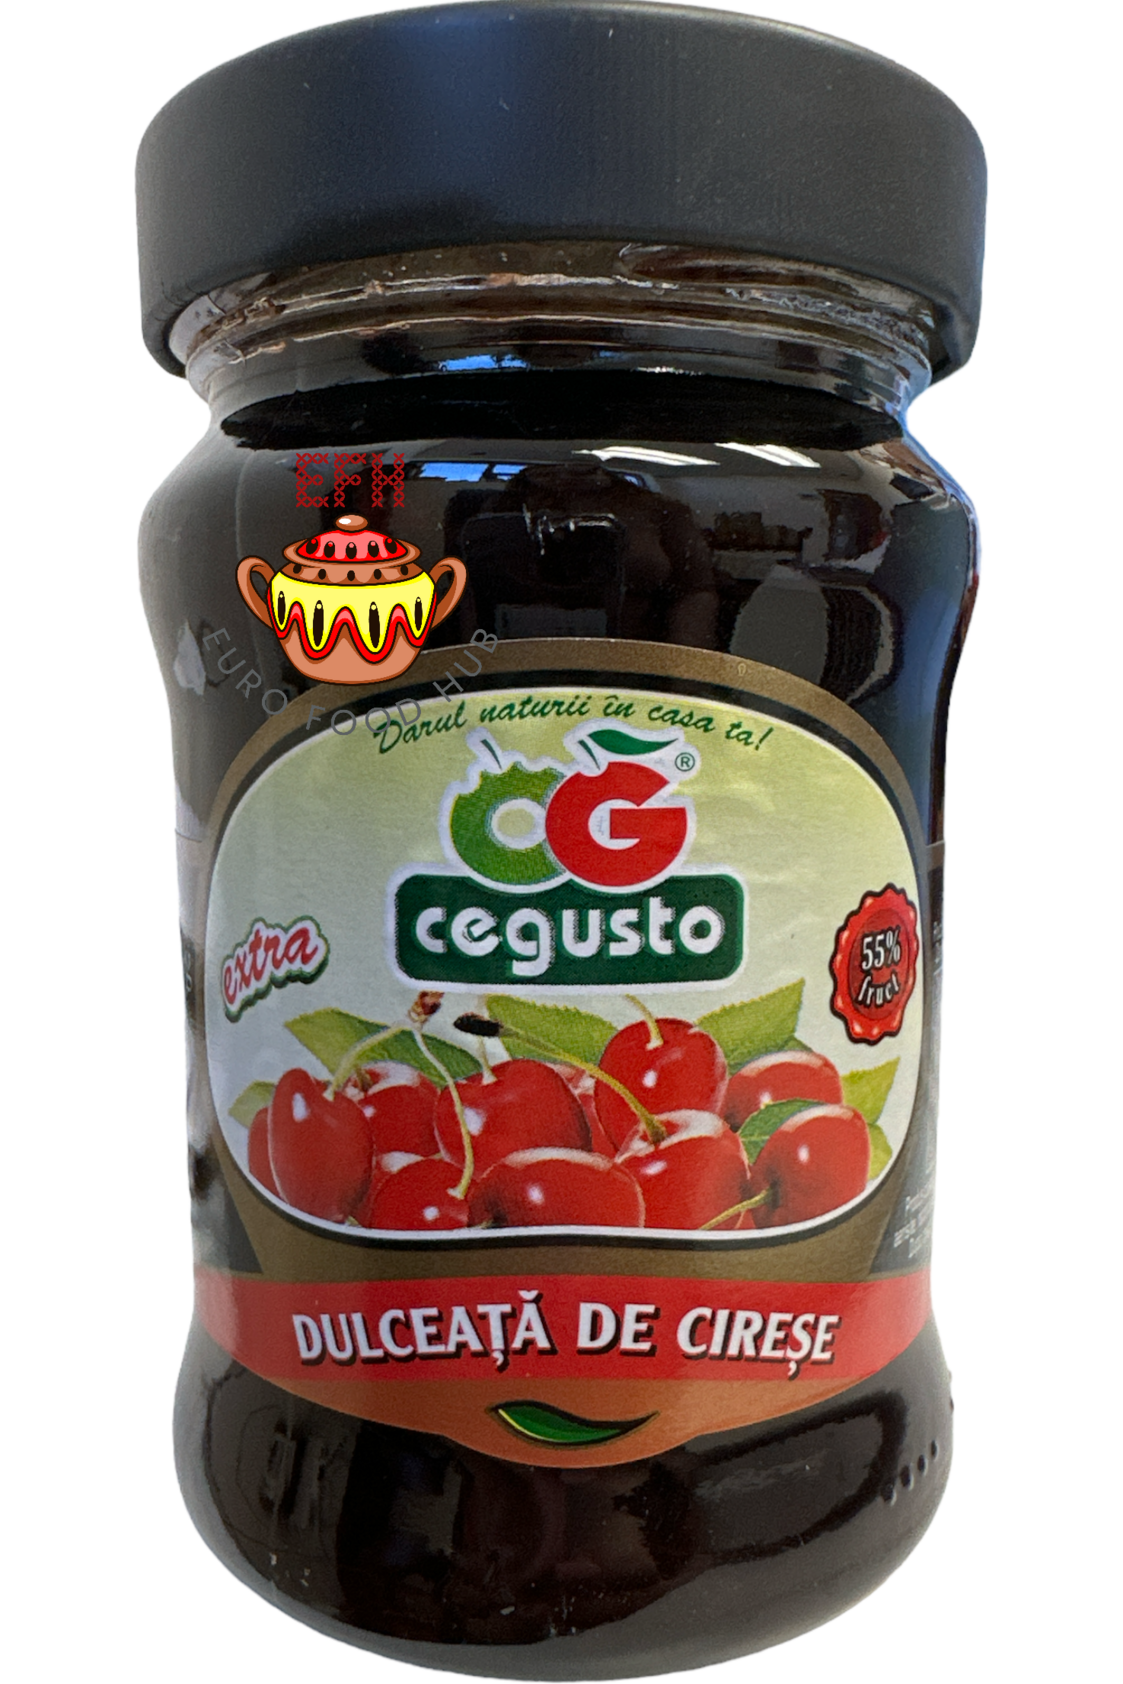 Cherry Jam - Cegusto - Dulceata de Cirese